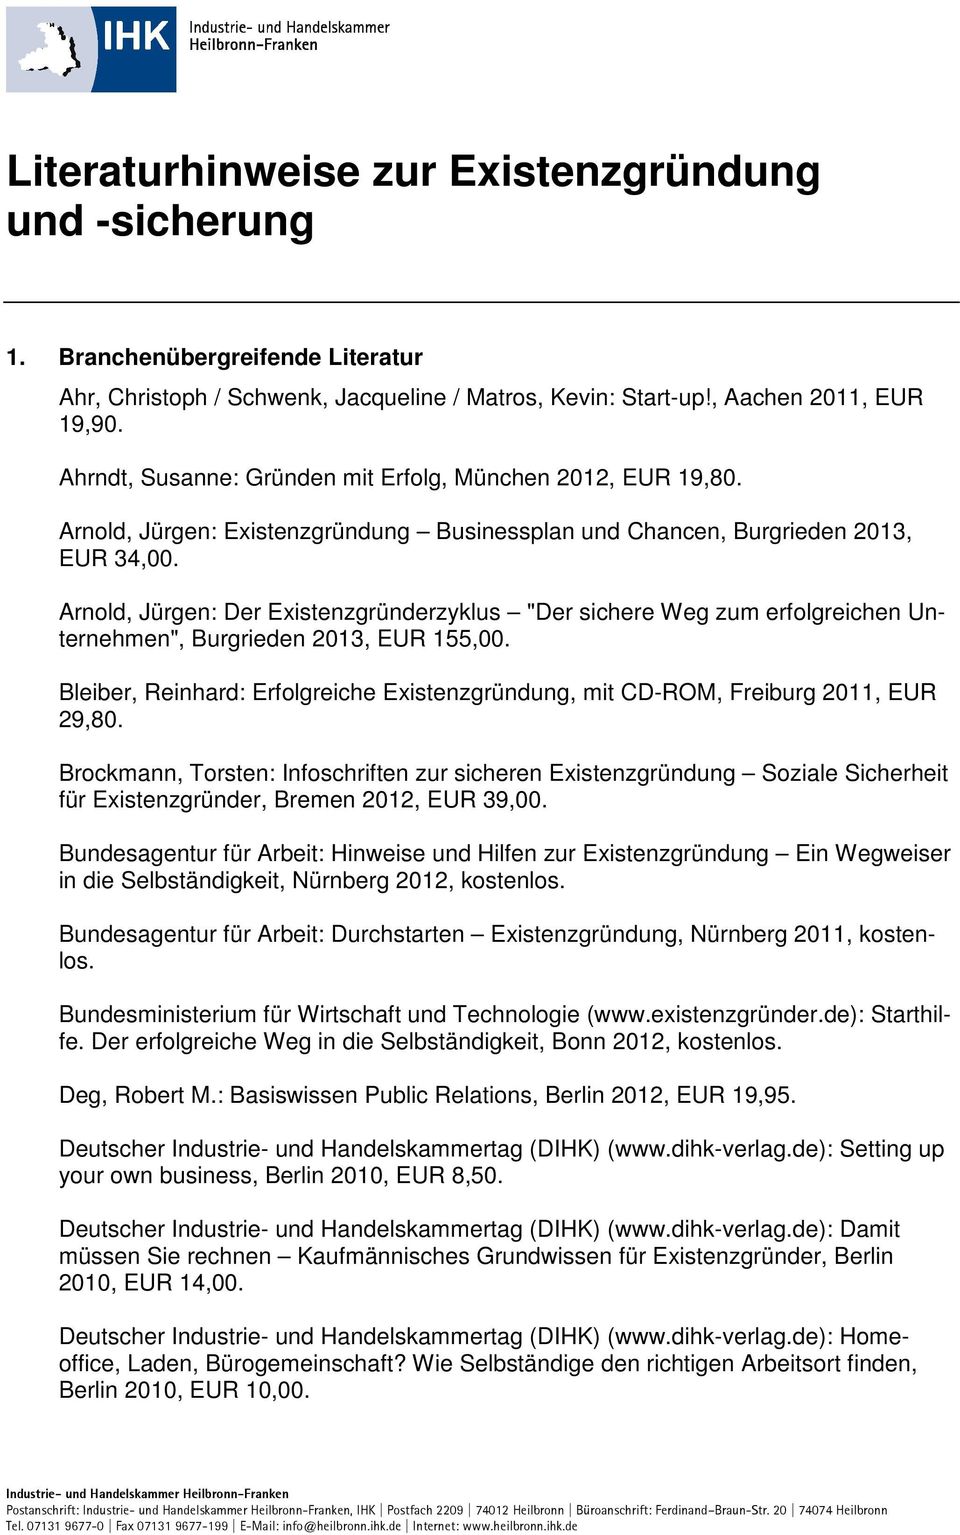 Arnold, Jürgen: Der Existenzgründerzyklus "Der sichere Weg zum erfolgreichen Unternehmen", Burgrieden 2013, EUR 155,00.